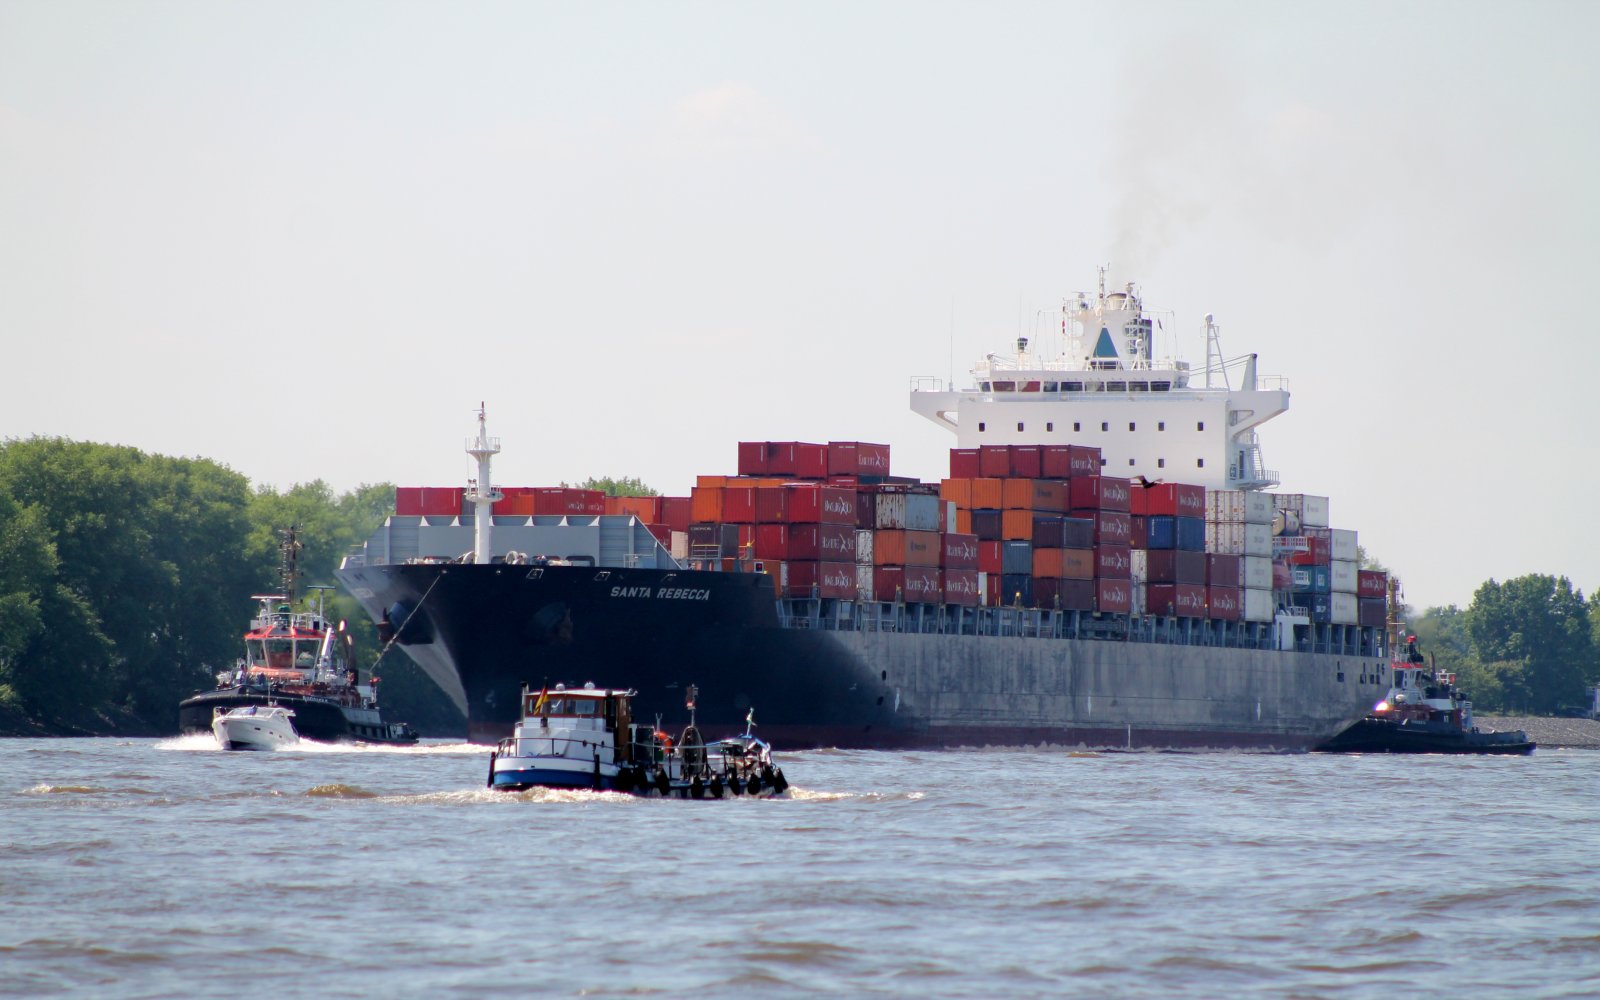  Container Schiff - Santa Rebecca - wird in Hafen gelotst 